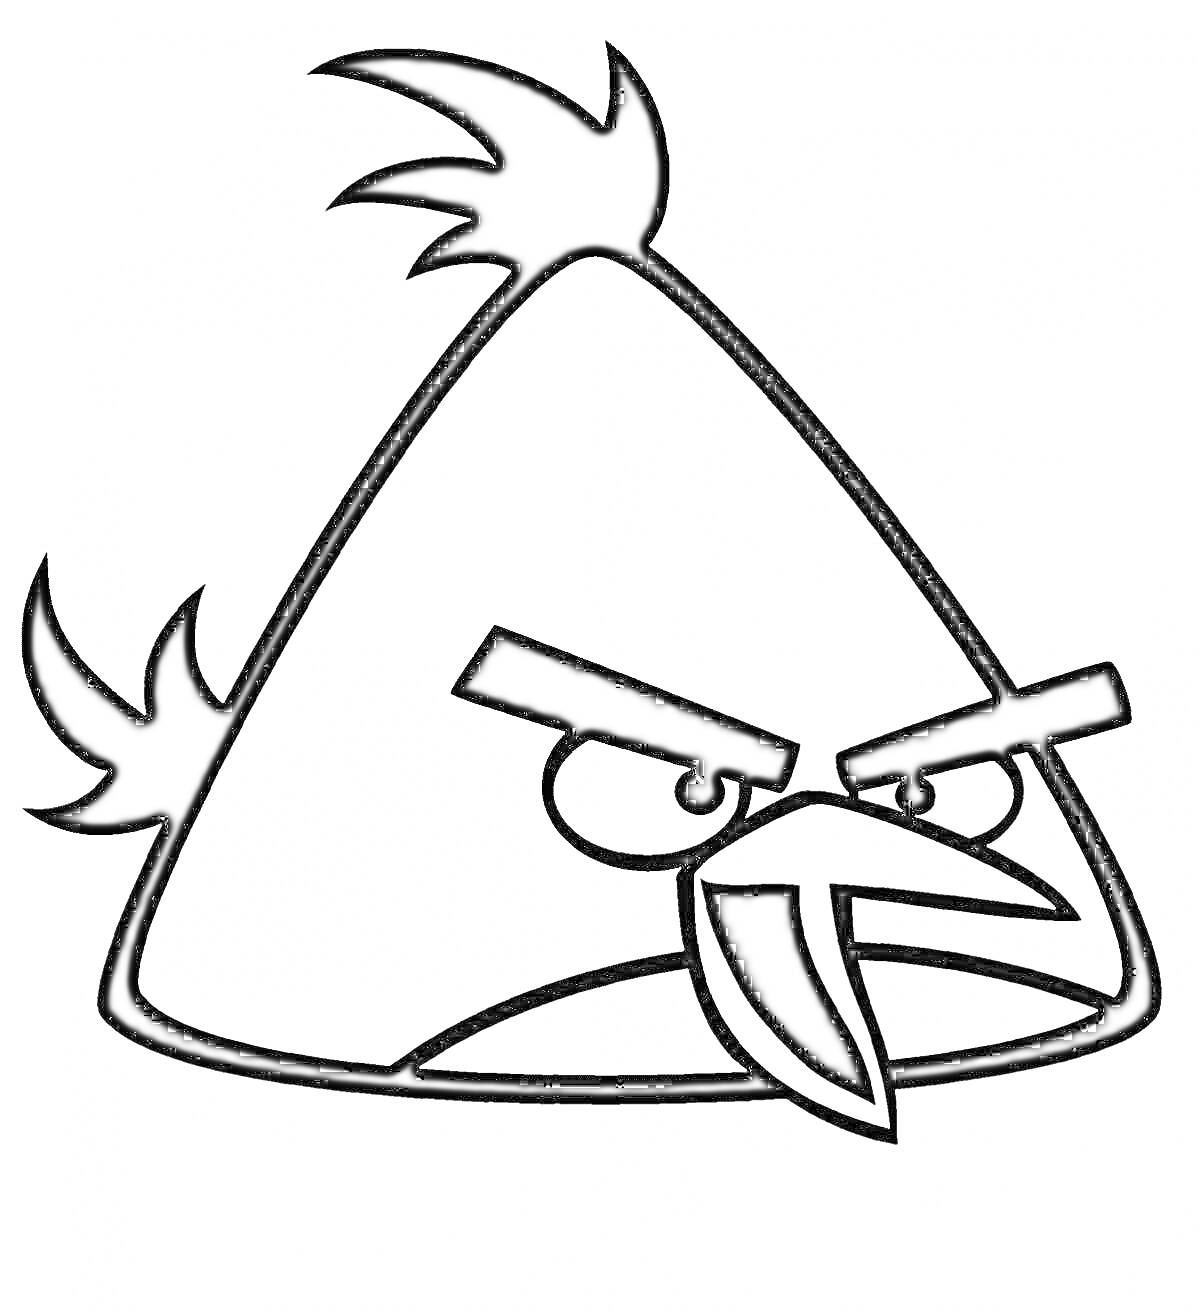 Треугольная птичка с хохолками и сердитым выражением лица из Angry Birds